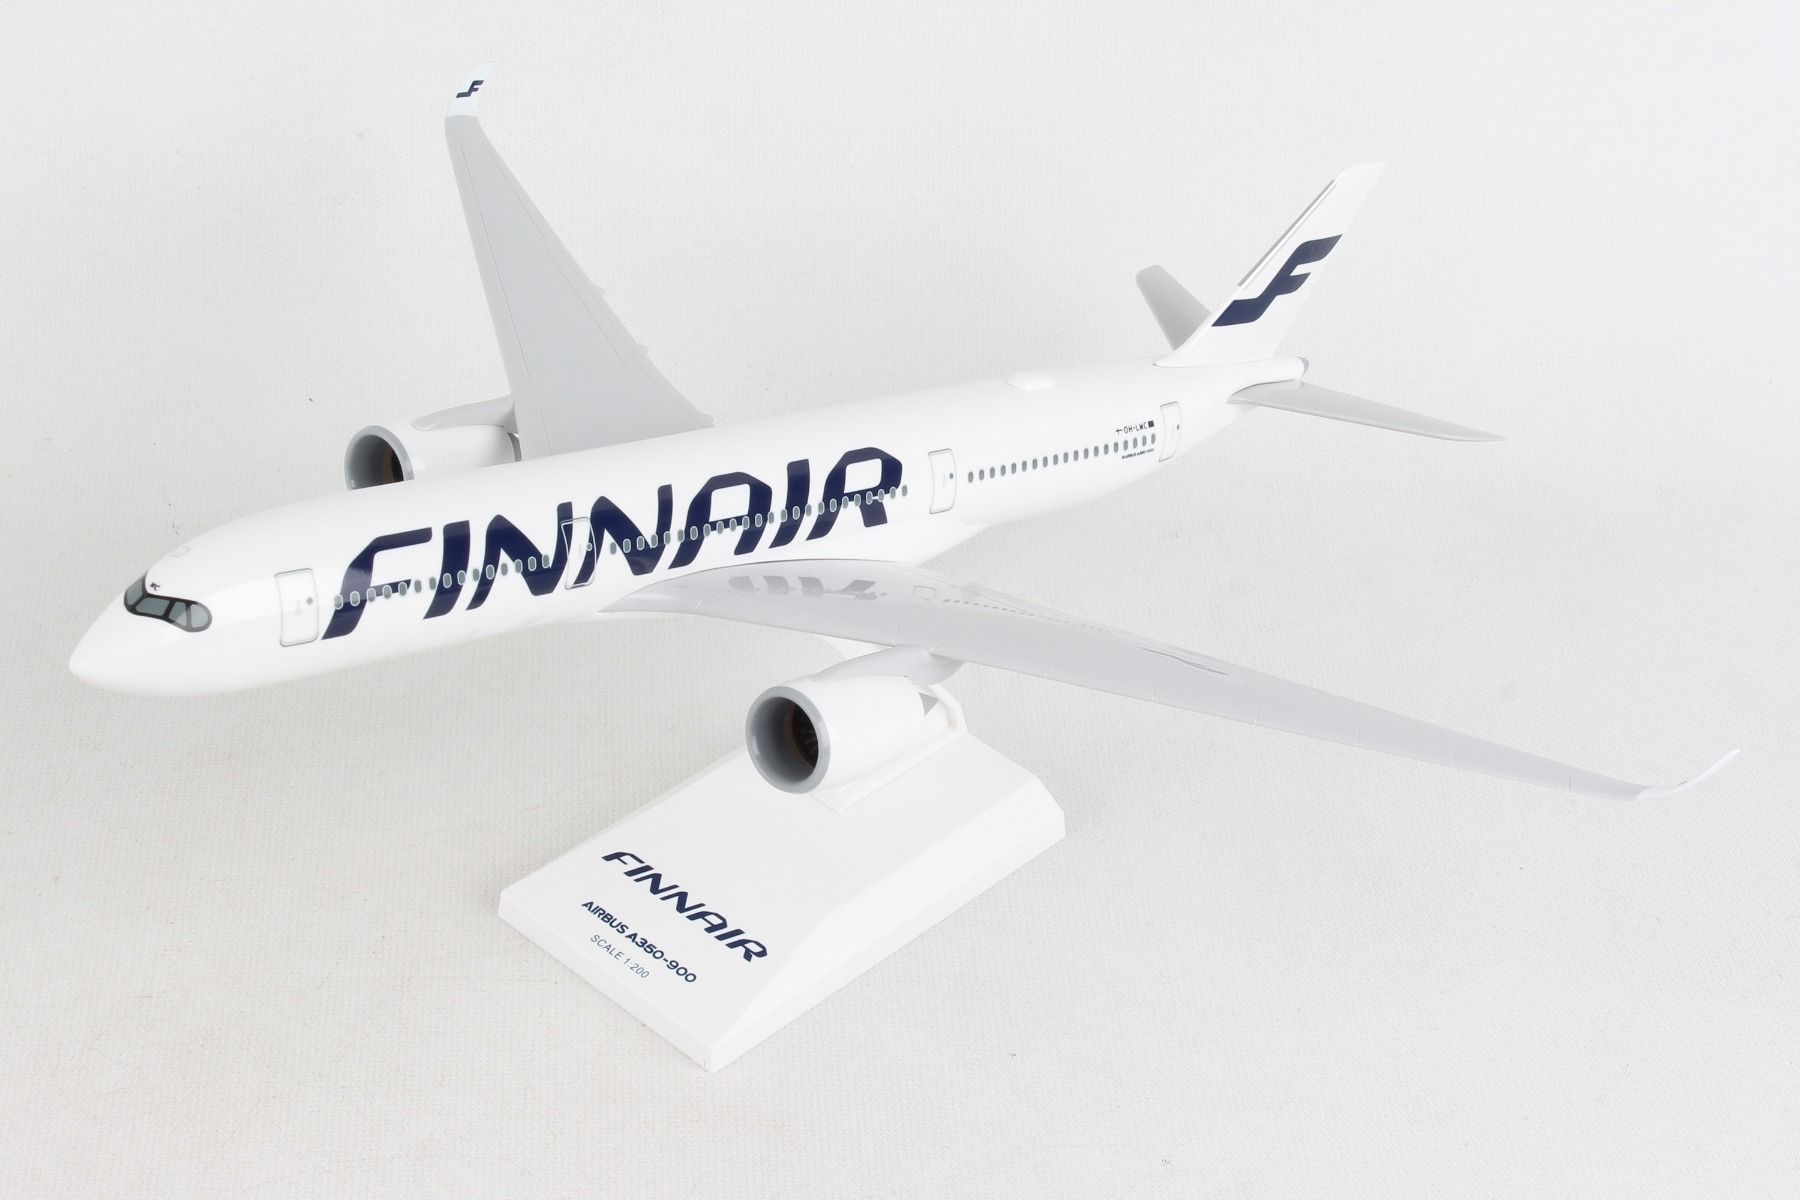 Airbus a350 xwb finnair "Happy Holidays" Oh-LWD jc Wings lh2196 1:200 